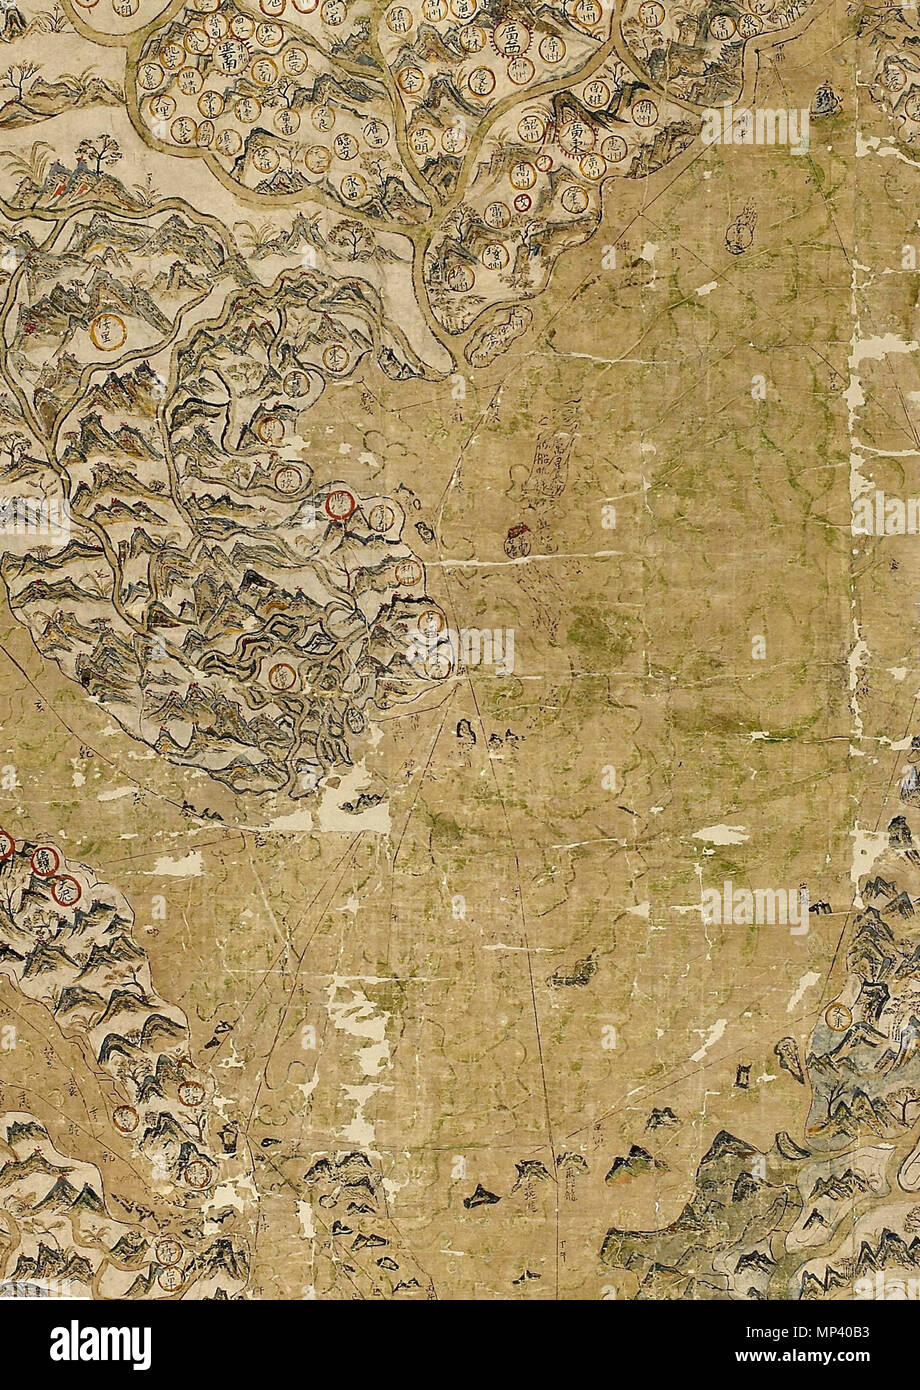 . Tiếng Việt: Bản đồ 'The Selden Map of China' được lưu trữ tại thư viện Đại học Oxford (Anh), được cho là 'Thiên hạ hải đạo toàn đồ' hay 'Đông - Tây dương hàng hải đồ' và được làm ra vào khoảng năm Thiên Khải thứ 4 (1624), có ghi địa danh Vạn Lí Thạch Đường (萬里石塘), (phía đông của đảo mang tên Ngoại La (外羅), tức đảo Lý Sơn), ở kề cận phía nam tây nam của Vạn Lí Trường Sa (萬里長沙). 1624. John Selden (?-1654) 1109 SeldenMap1624 Stock Photo